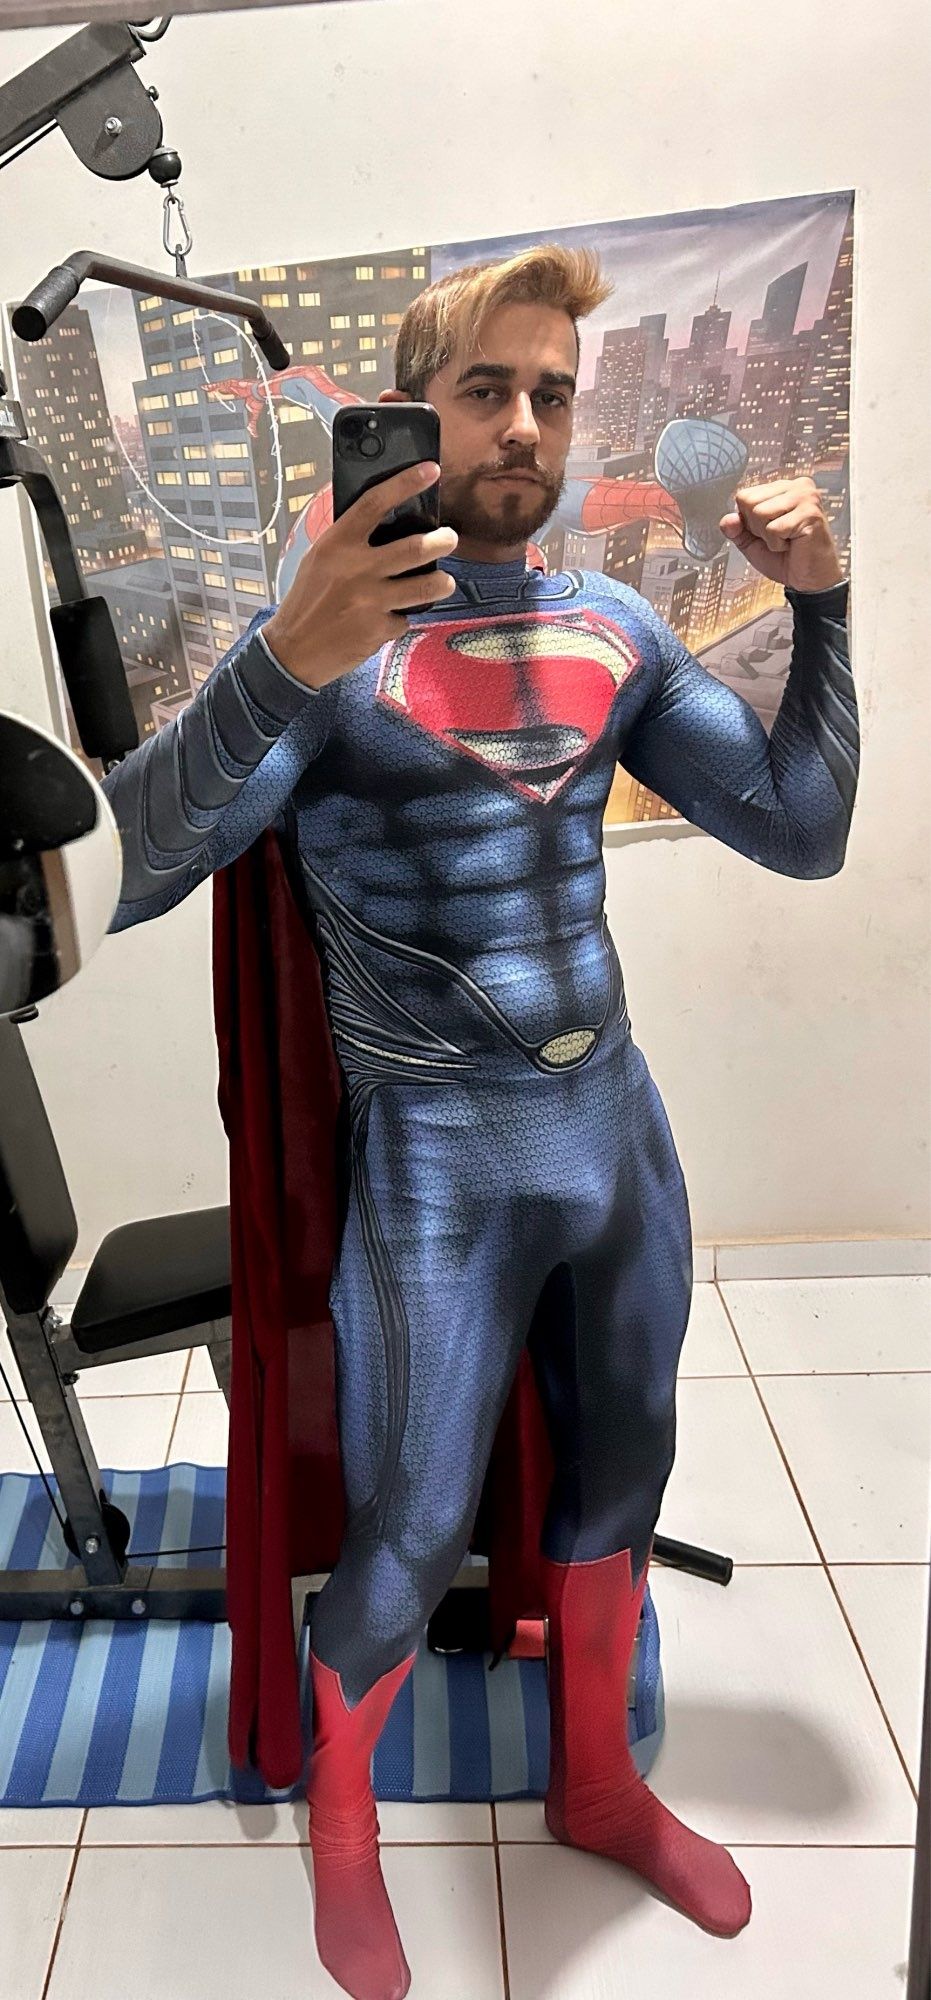 Costume Cosplay Superman pentru Halloween, evenimente, petreceri